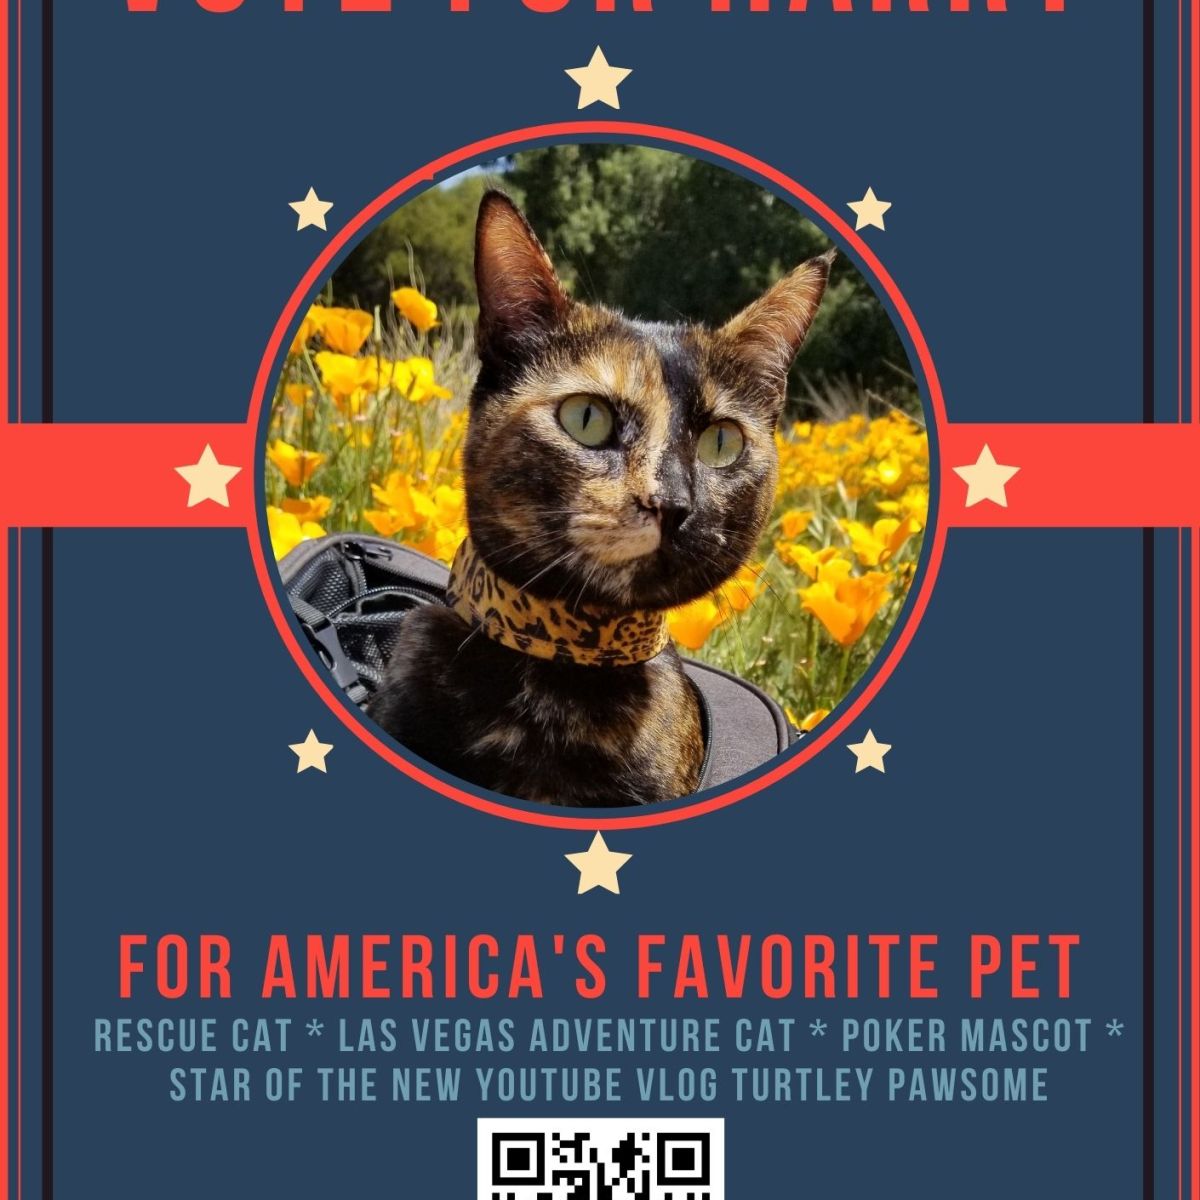 The Las Vegas Adventure Cat Running for America’s Favorite Pet